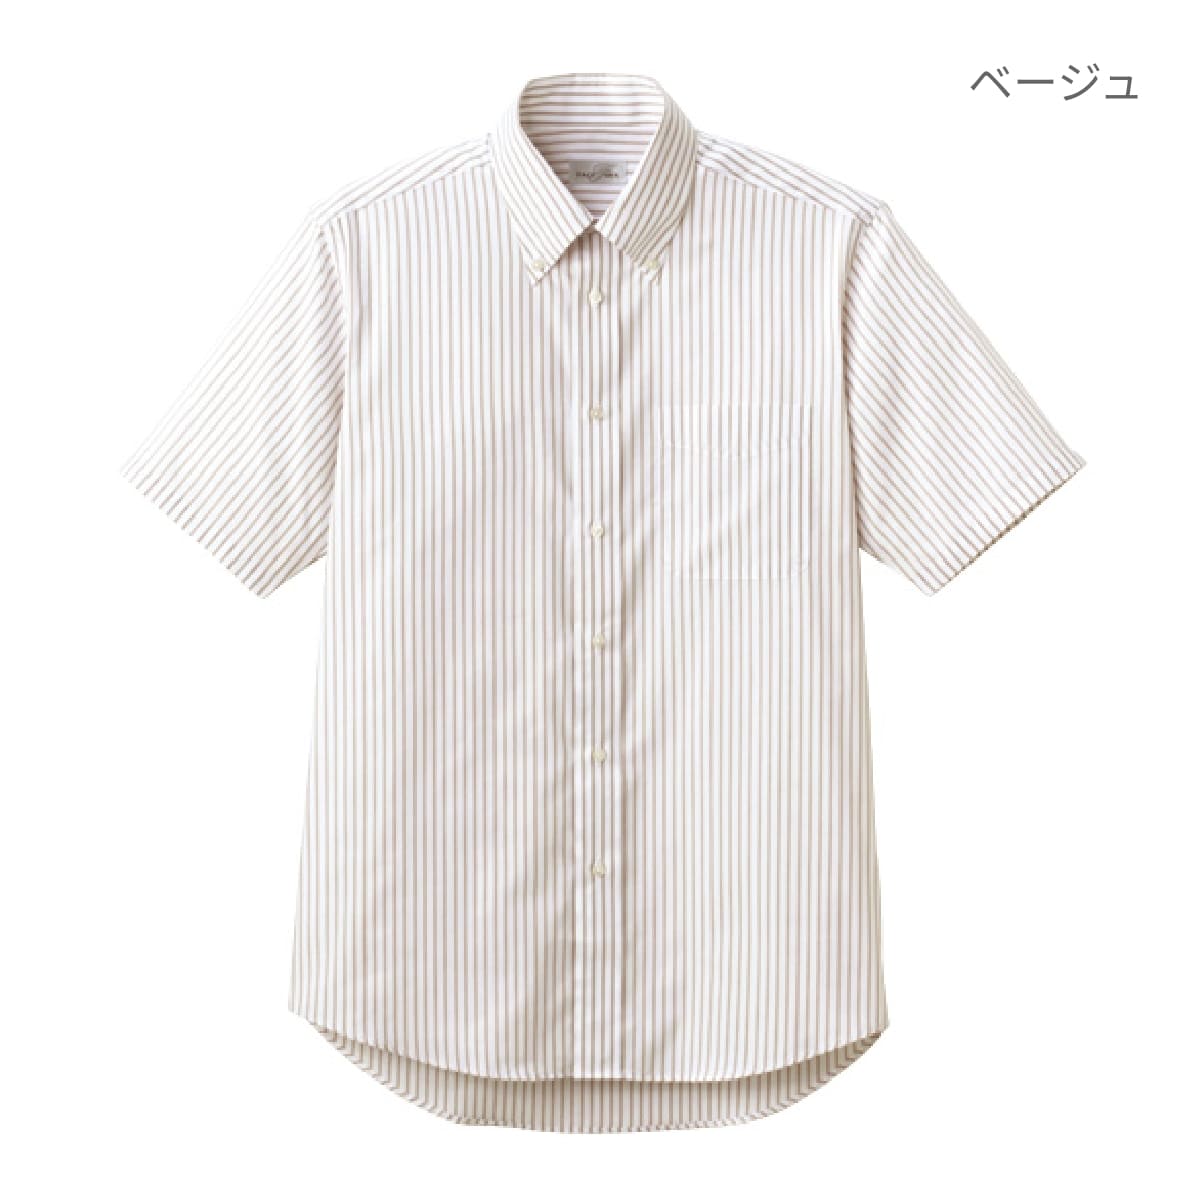 ユニセックスシャツ（半袖） | メンズ | 1枚 | FB4509U | ベージュ